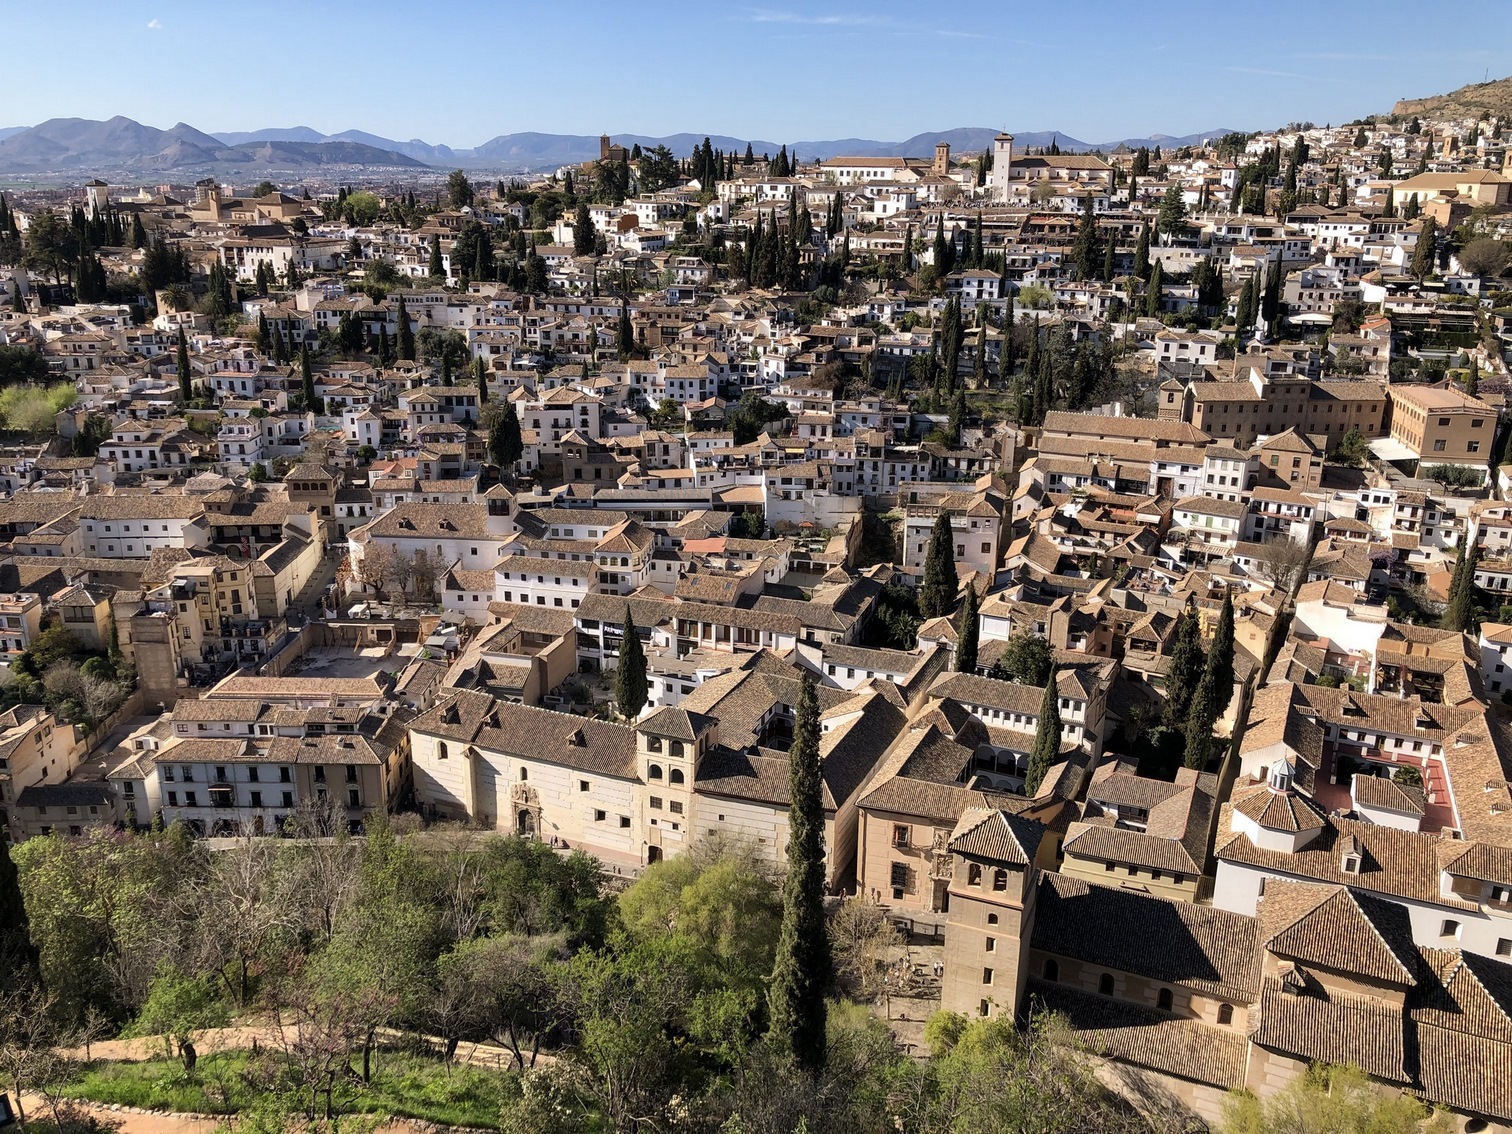 Kompleks zamkowo - pałacowy Alhambra – widok na dzielnicę Albaicín